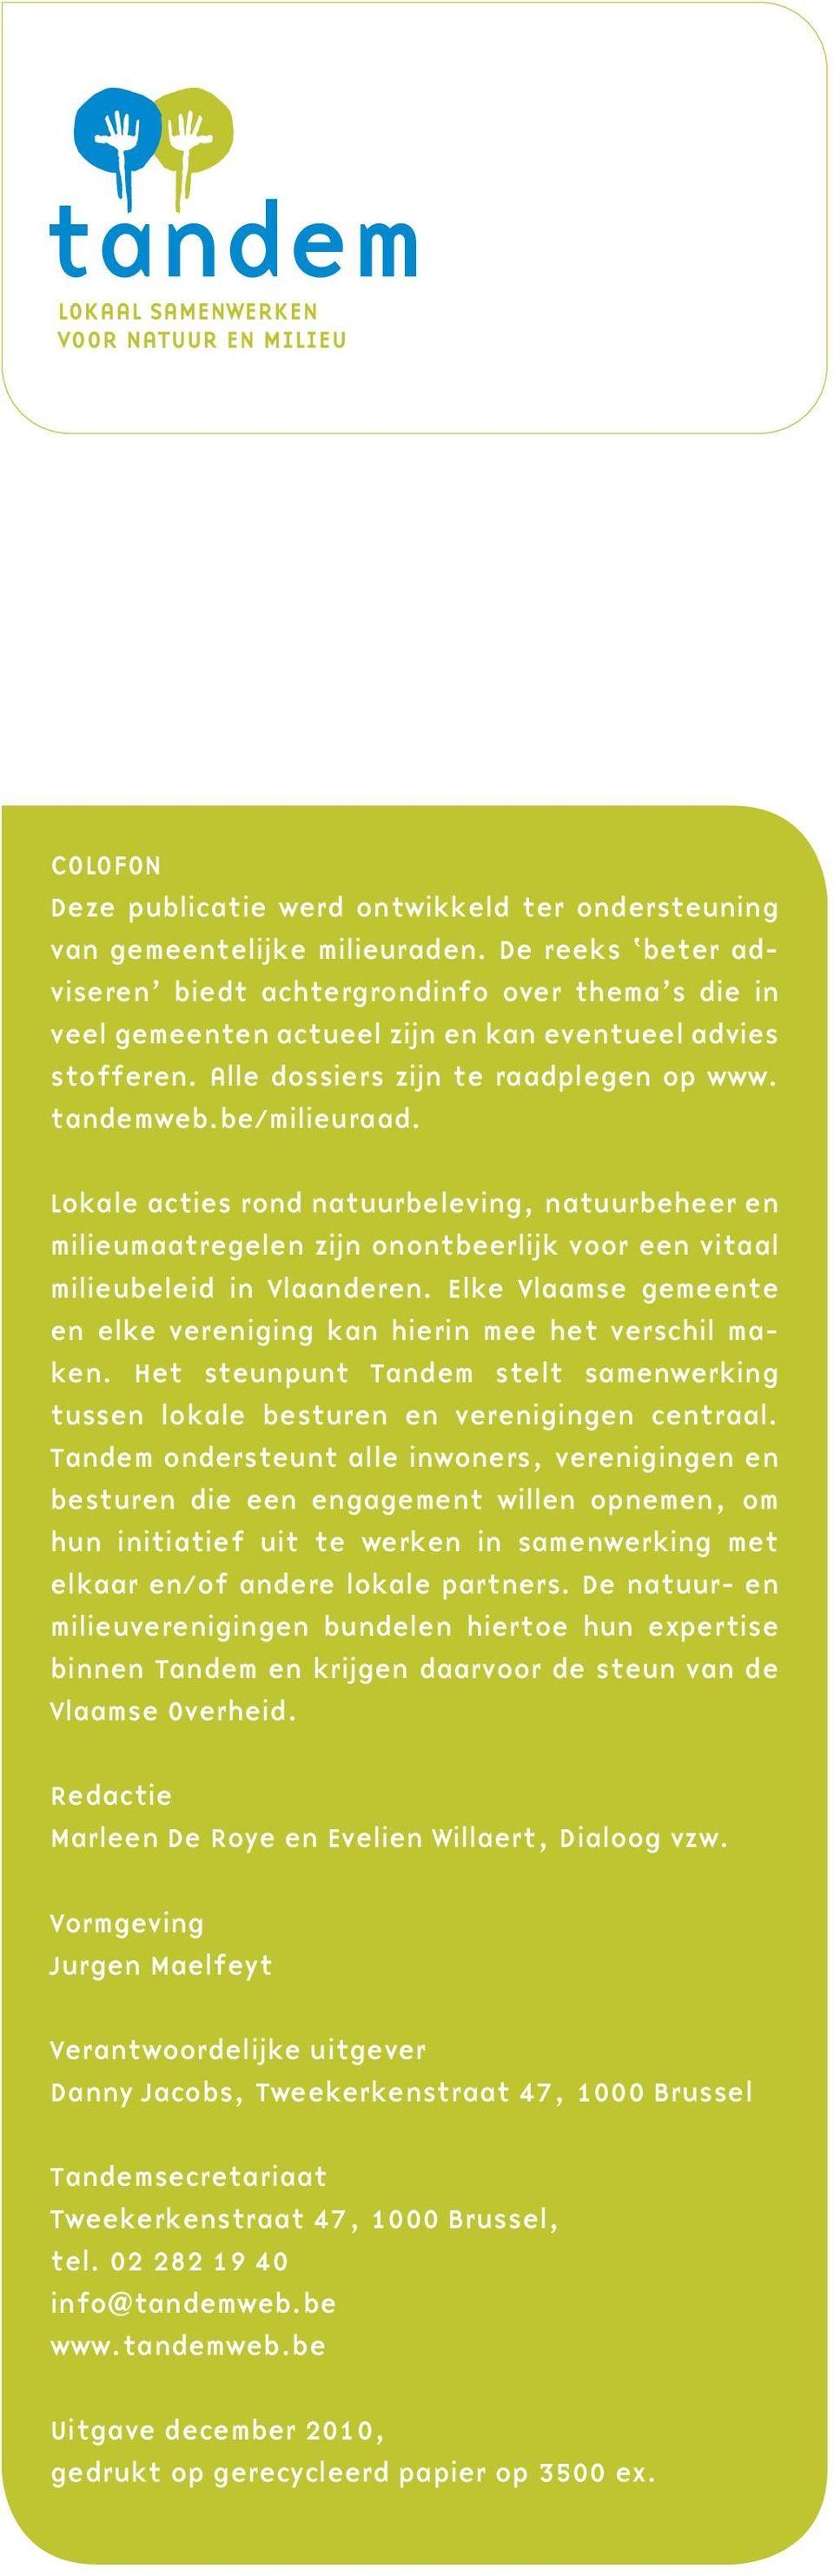 Lokale acties rond natuurbeleving, natuurbeheer en milieumaatregelen zijn onontbeerlijk voor een vitaal milieubeleid in Vlaanderen.